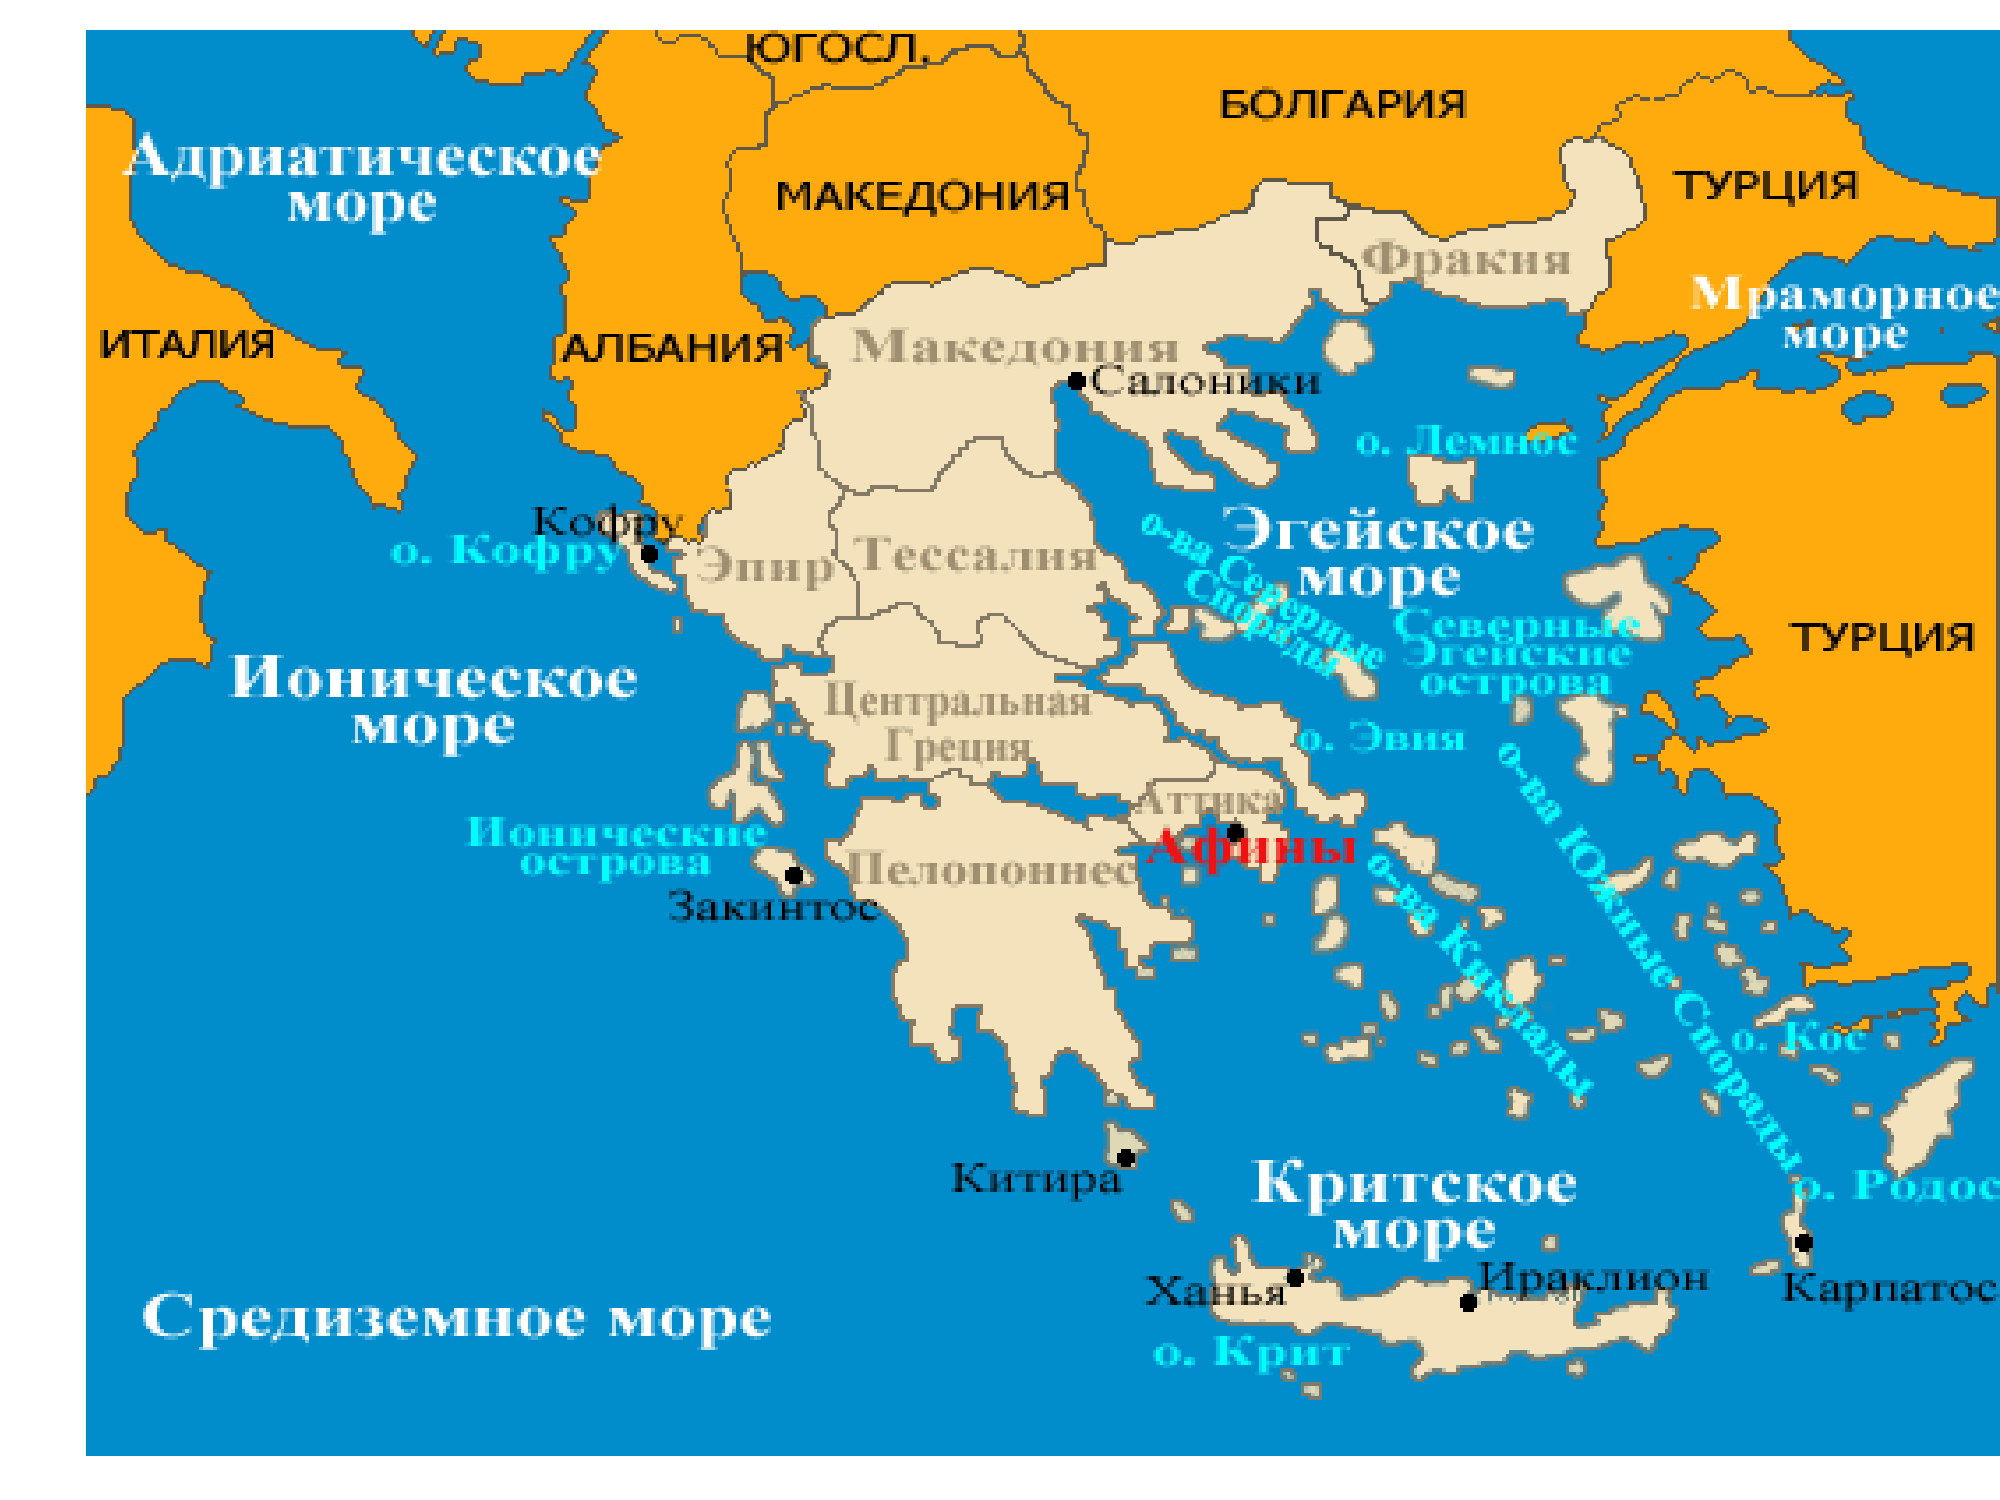 острова греции карта